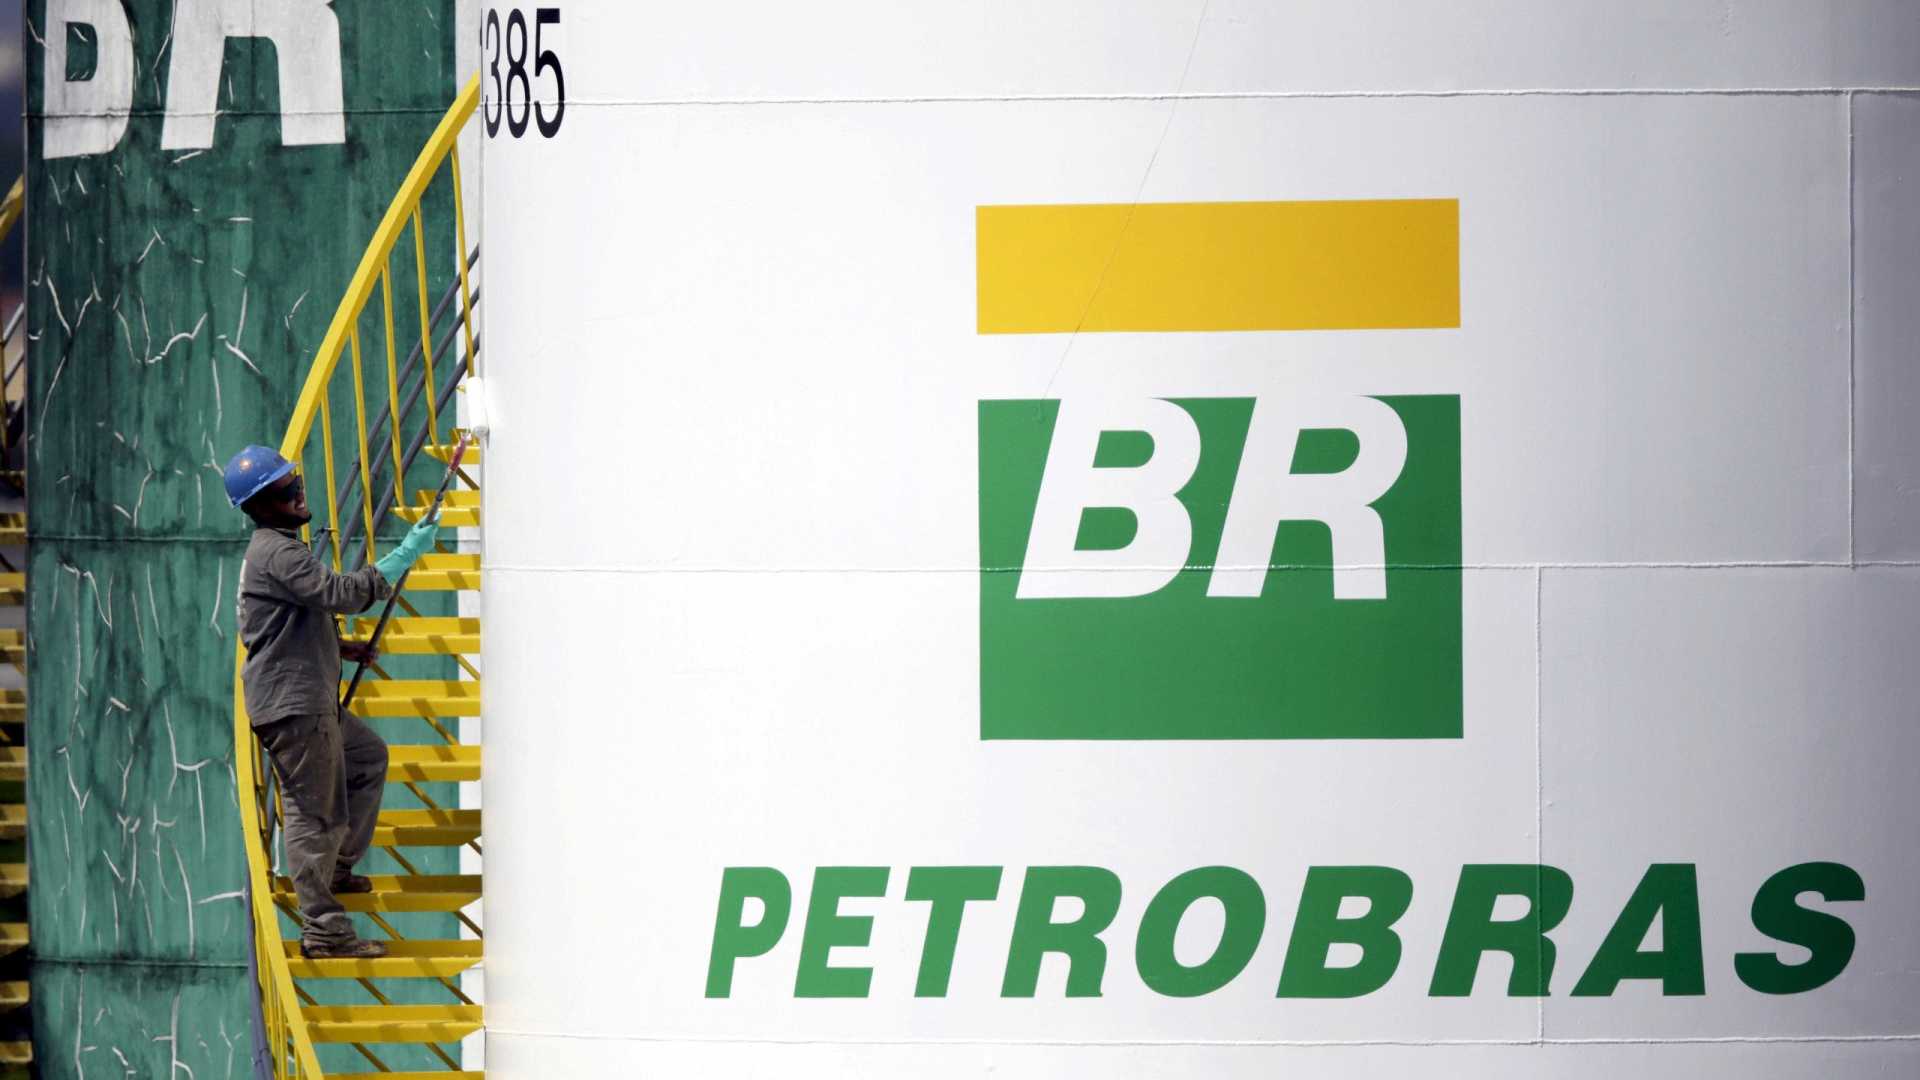 CNT diz que Petrobras mente sobre reajustes